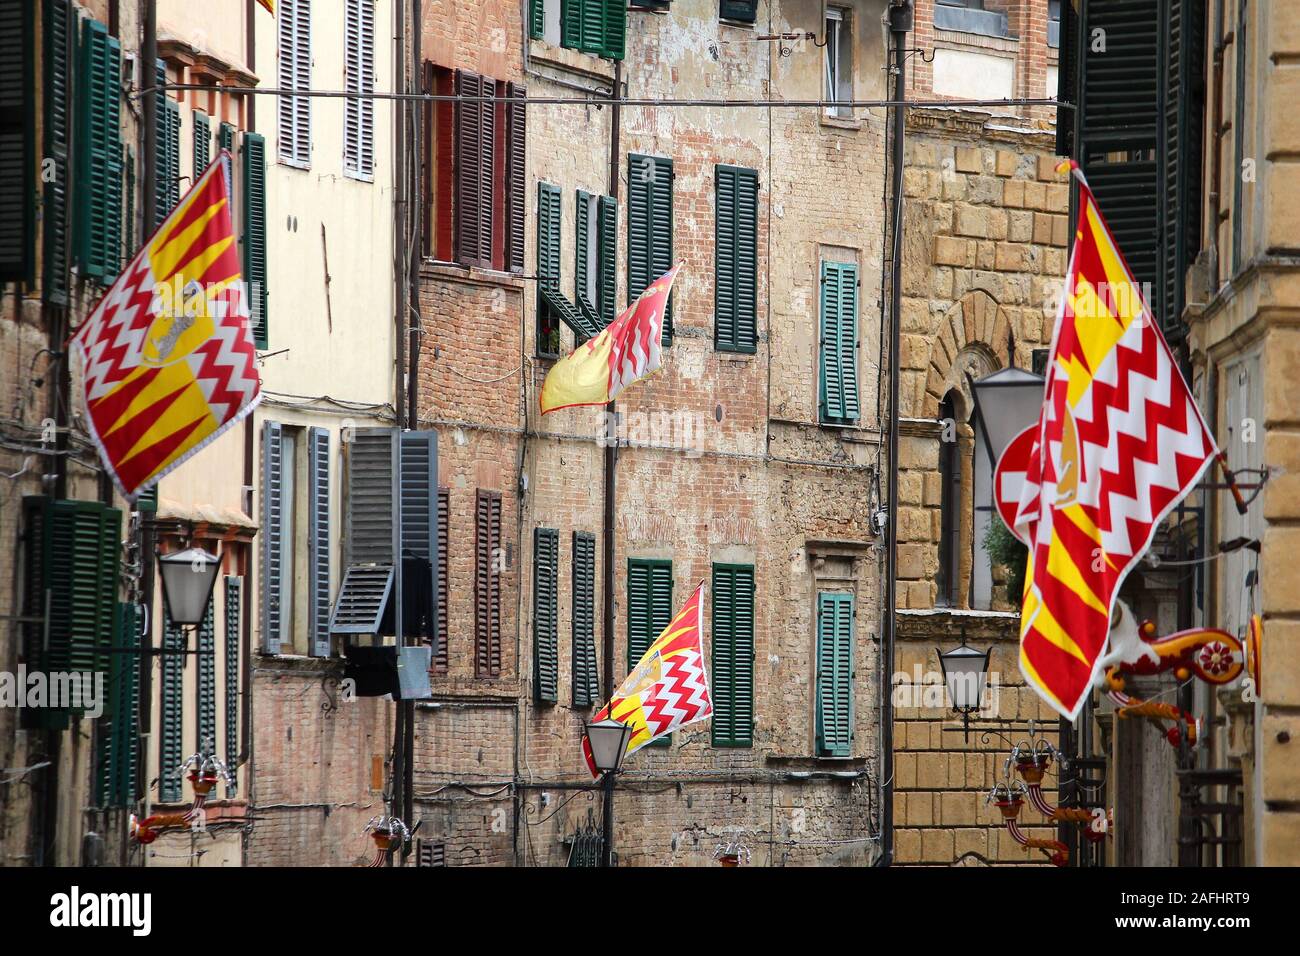 Sienne, Italie. La vieille ville est divisée en quartiers (contrade) traditionnel avec des drapeaux et couleurs. Valdimontone (vallée de la Ram). Banque D'Images